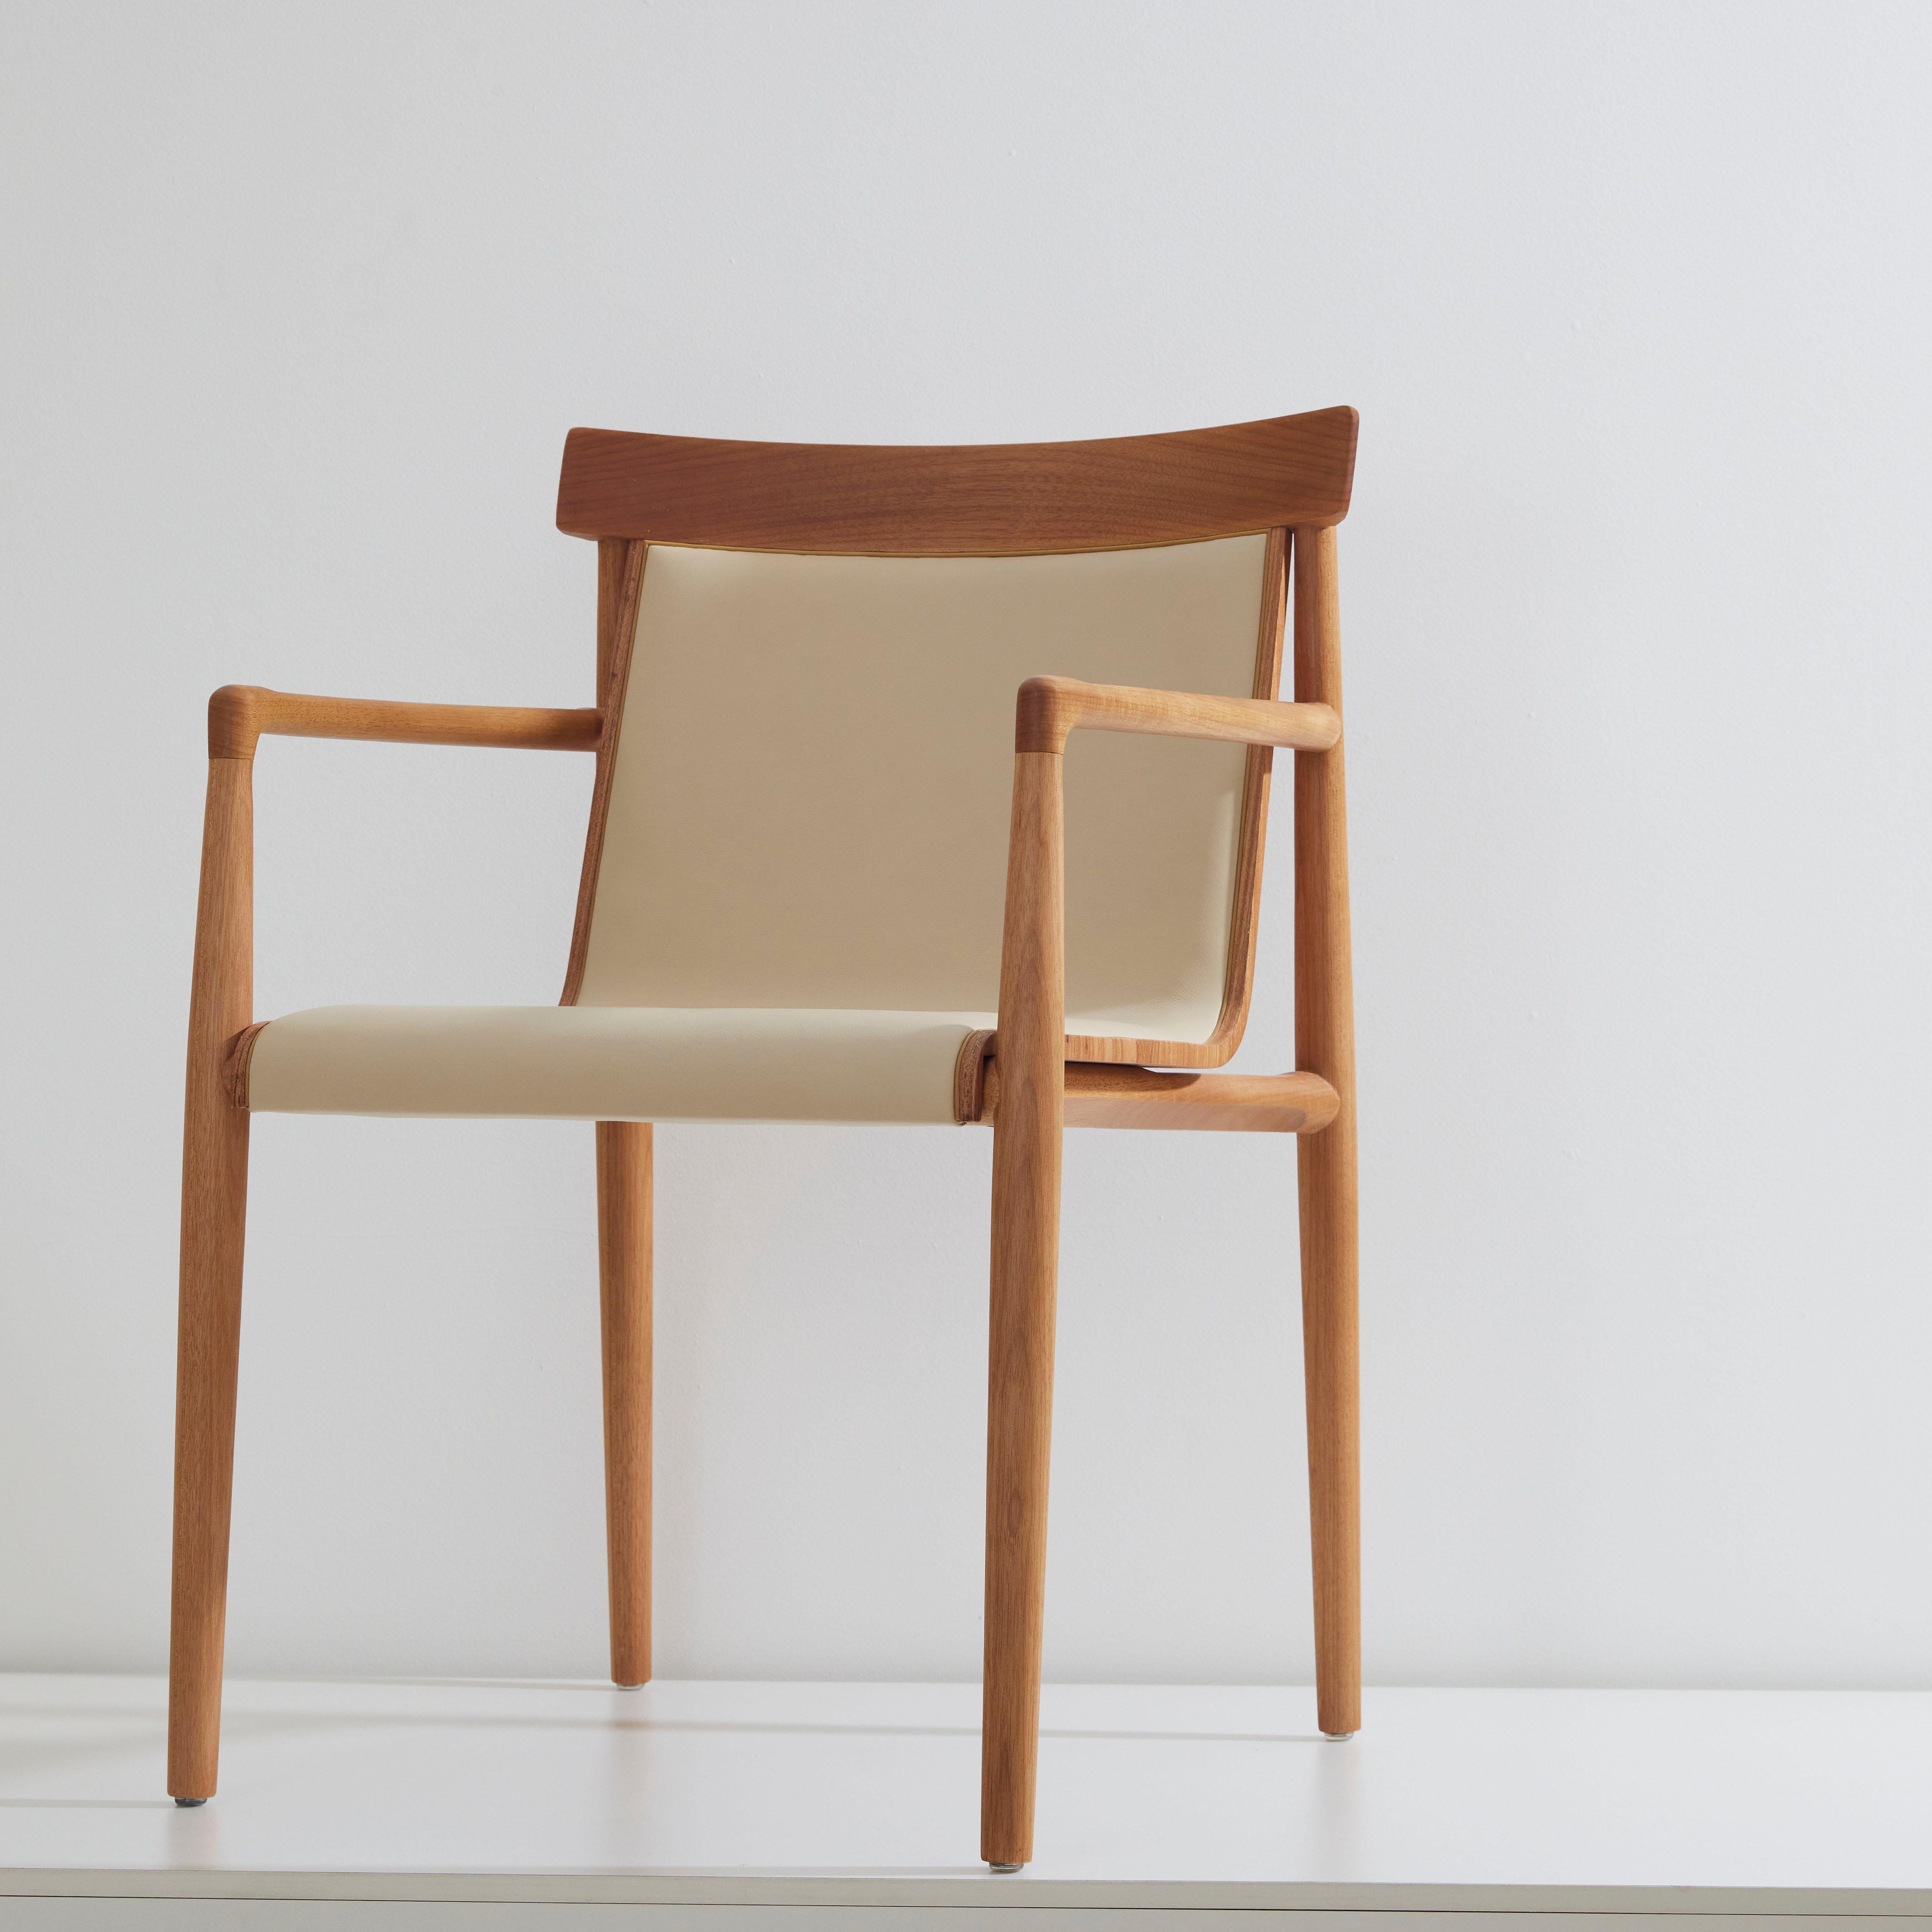 Sammlung trockener Stühle.

Das Konzept des Dry Stuhls besteht darin, eine Mischung aus verschiedenen Referenzen zu schaffen, die zu einem modernen Klassiker führen, der zwischen Retro und Moderne tanzt. Die Struktur wird mit schwerem und tiefem